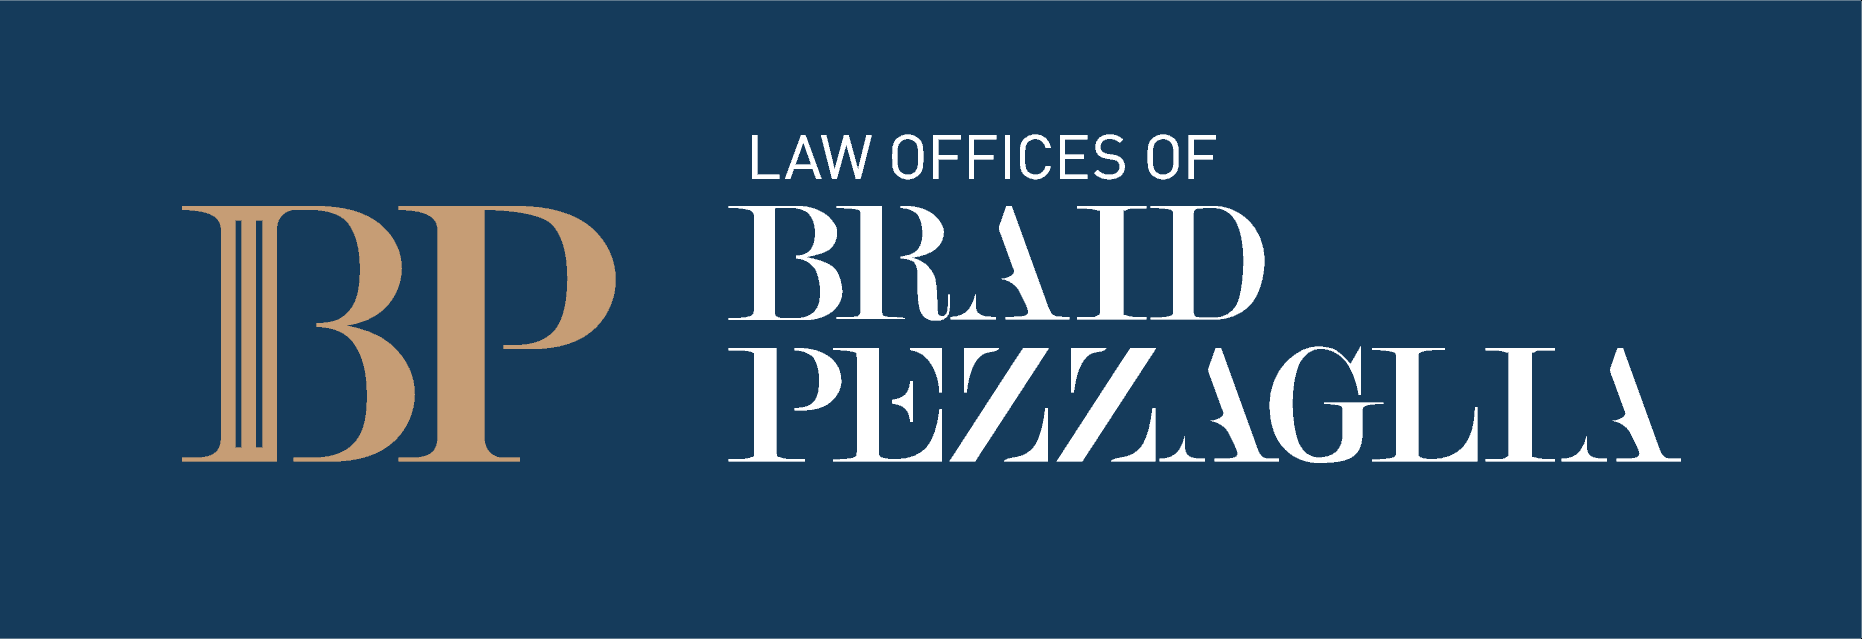 Pezzaglia Law Office logo